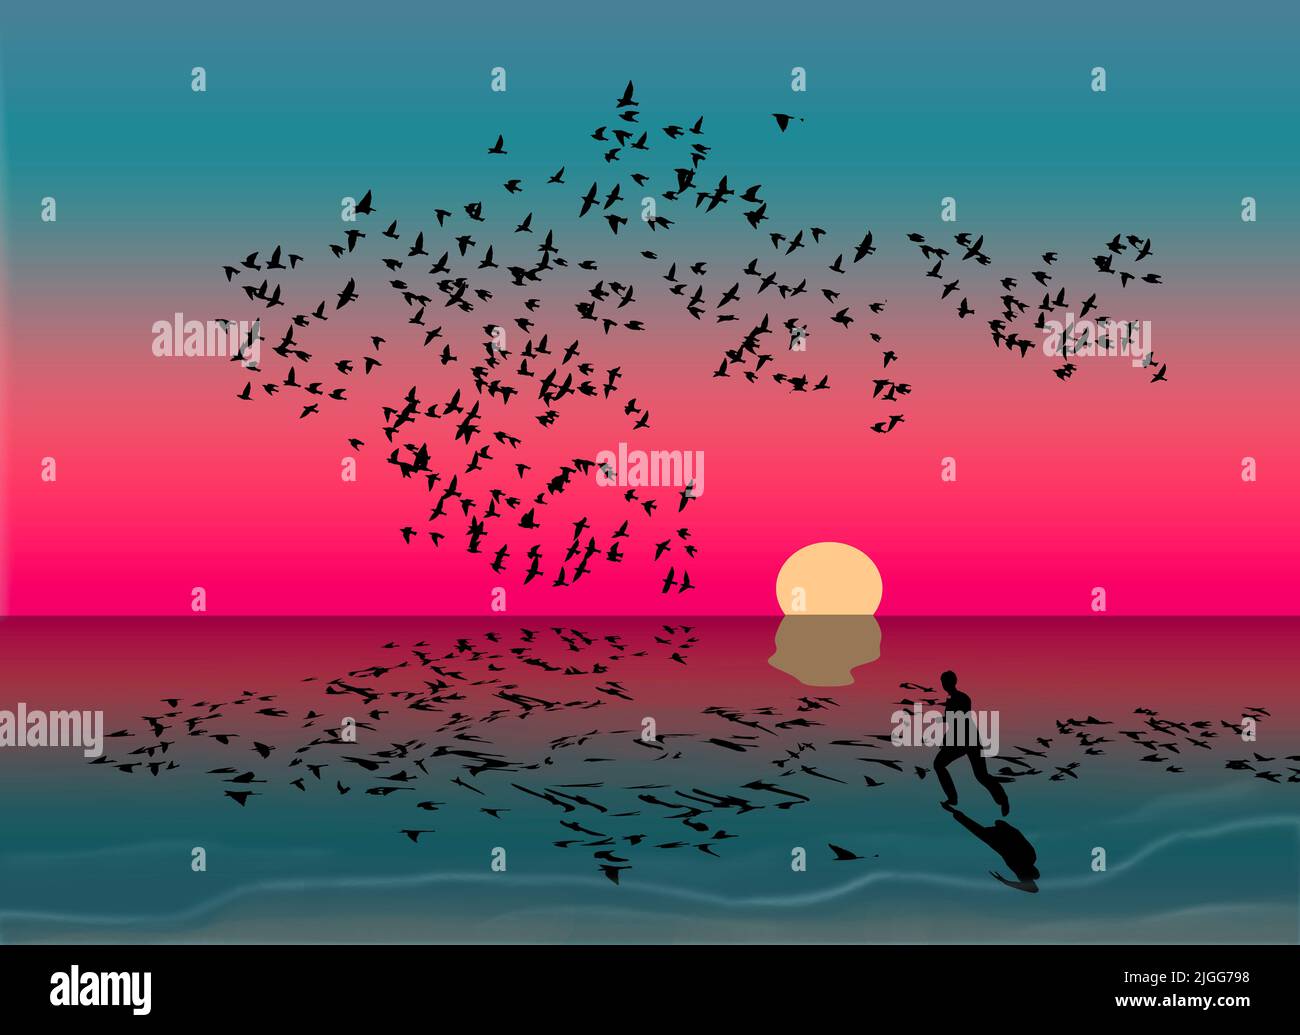 Una bandada de pájaros y un hombre corriendo detrás de las olas al atardecer se reflejan en el agua de un lago en esta ilustración de 3. Foto de stock